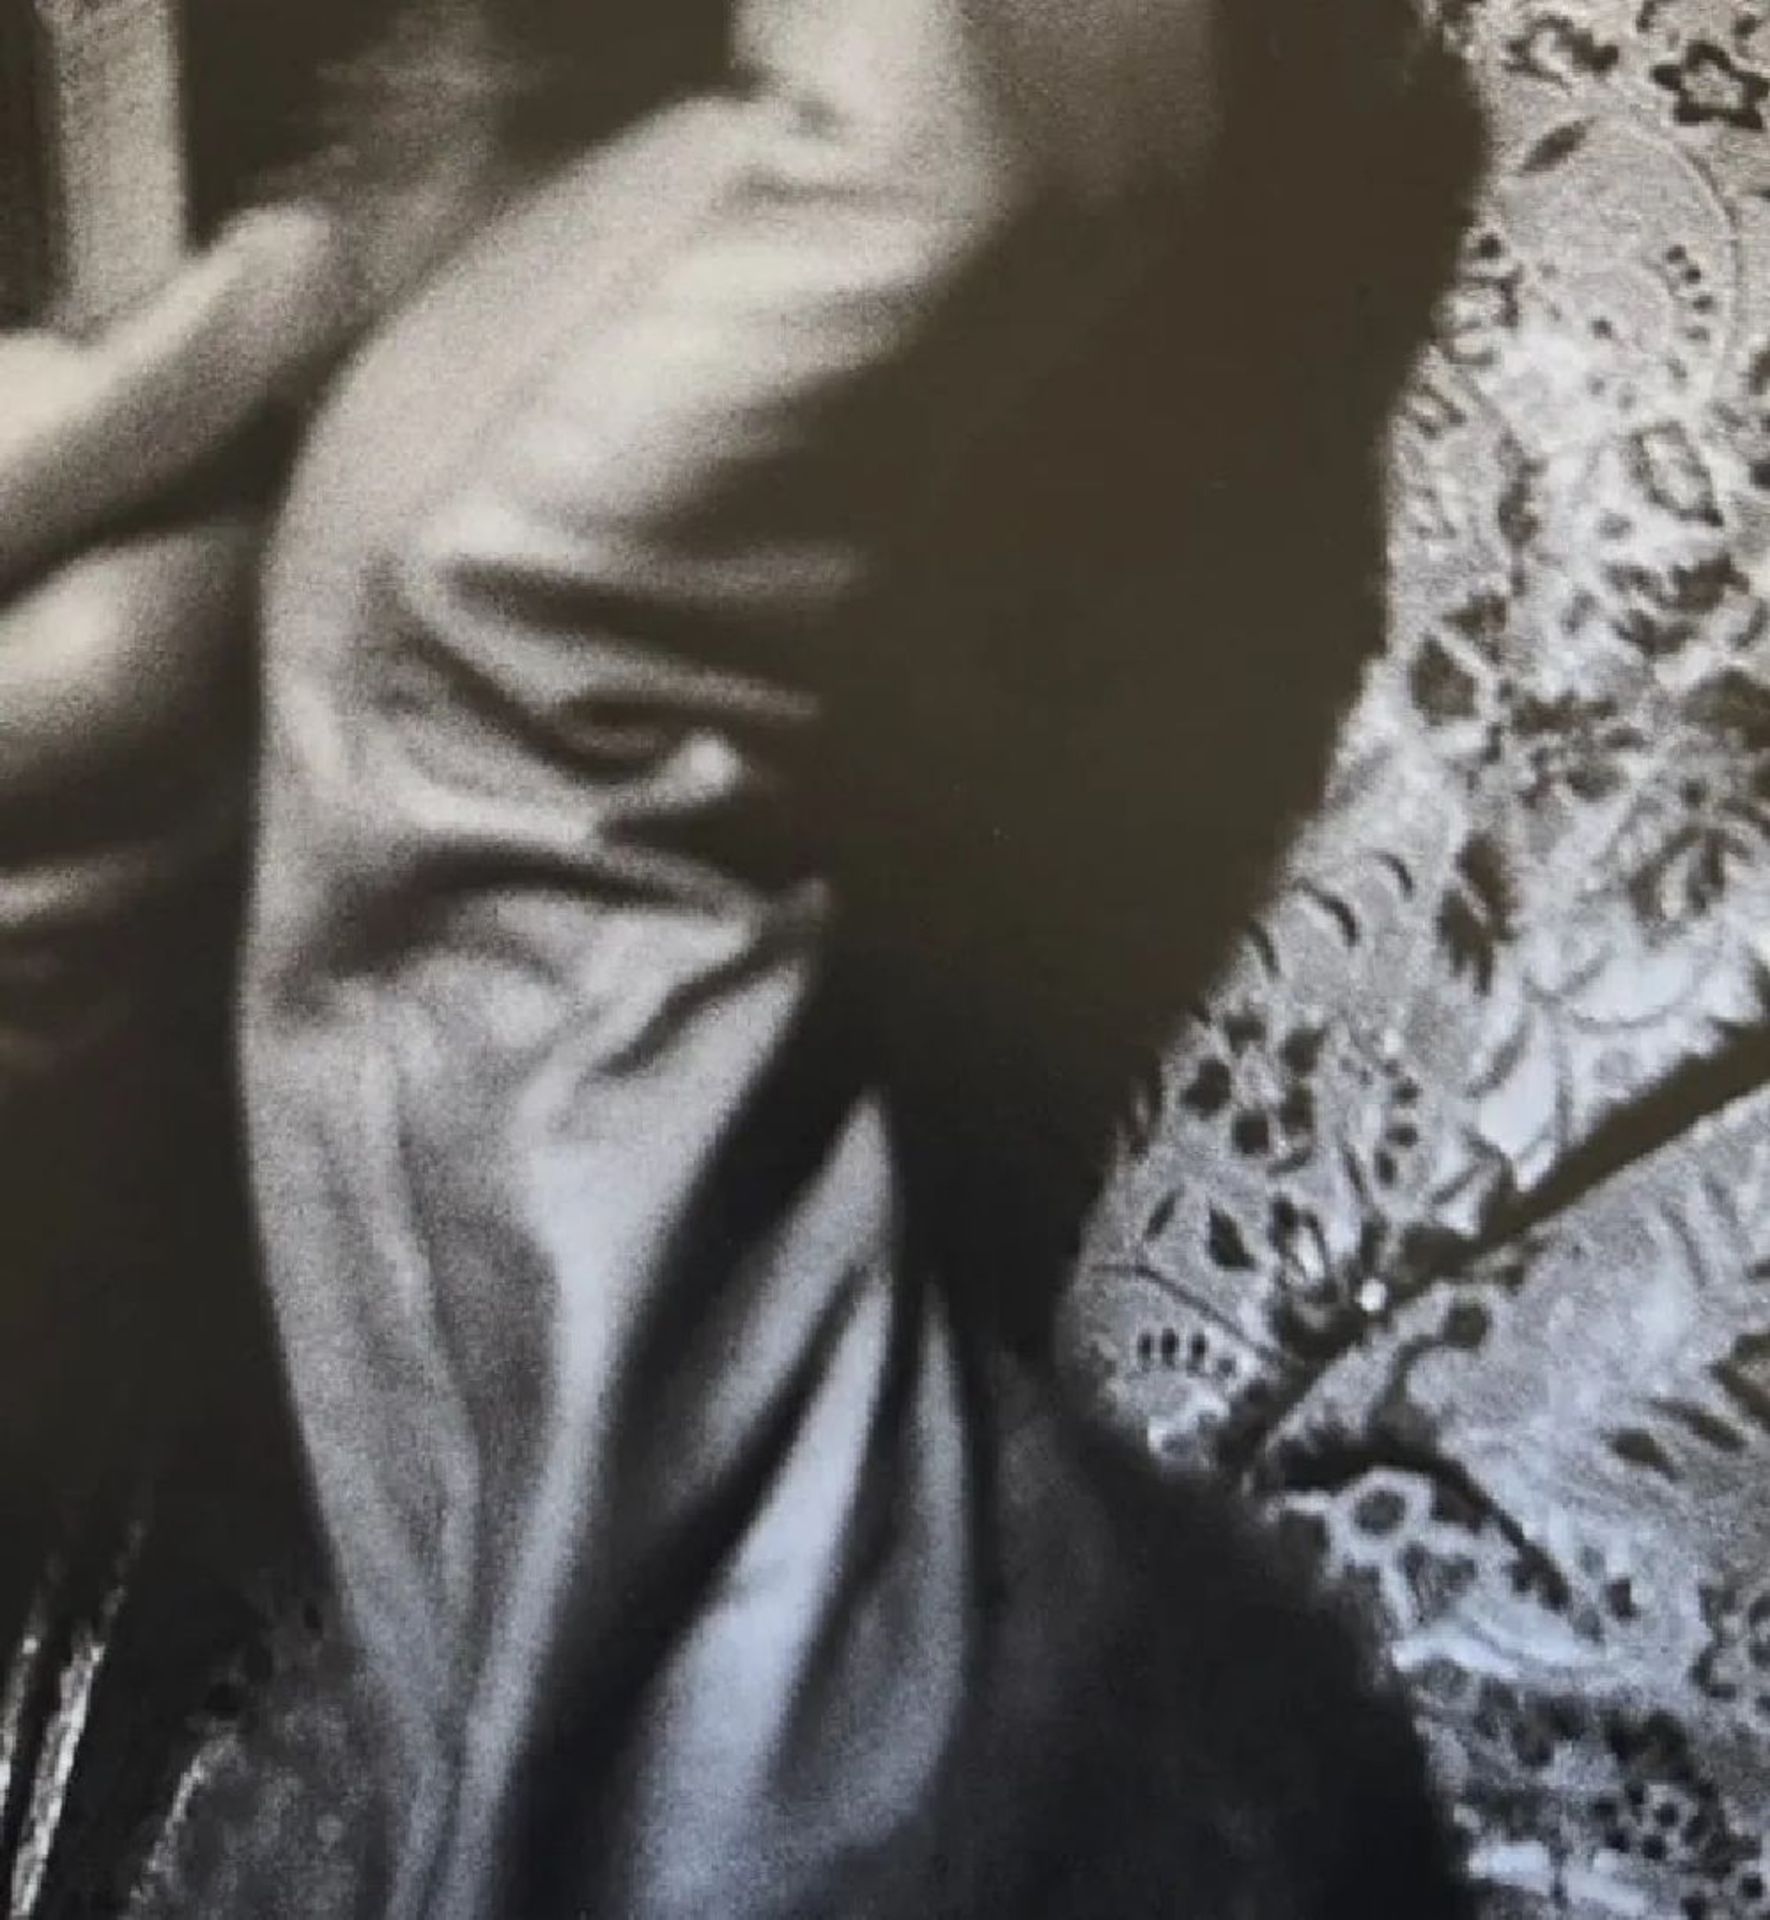 Richard Avedon "Untitled" Print. - Image 5 of 5